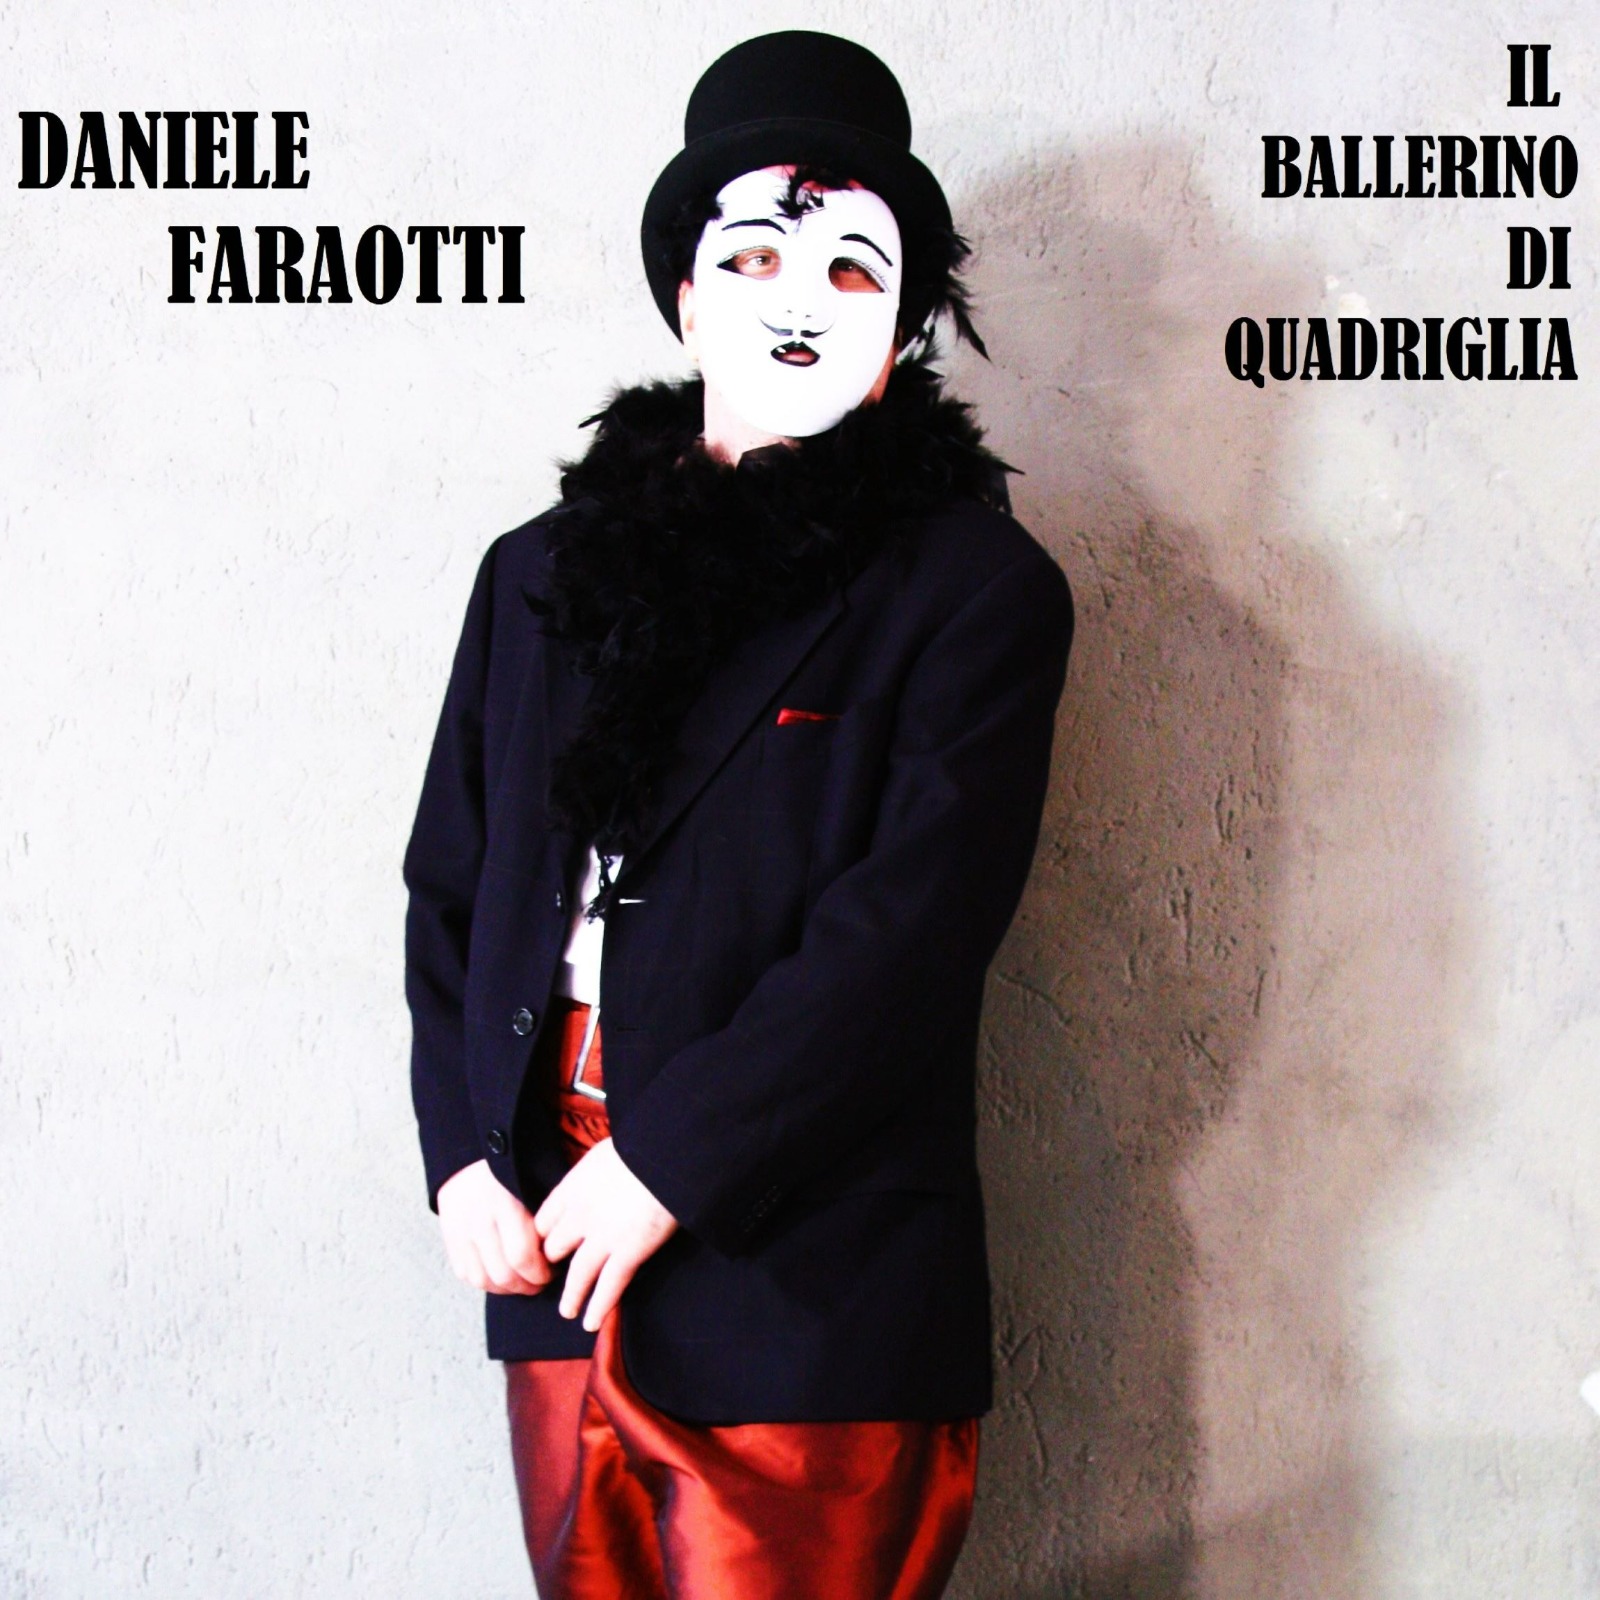 Daniele Faraotti – “Il ballerino di Quadriglia”